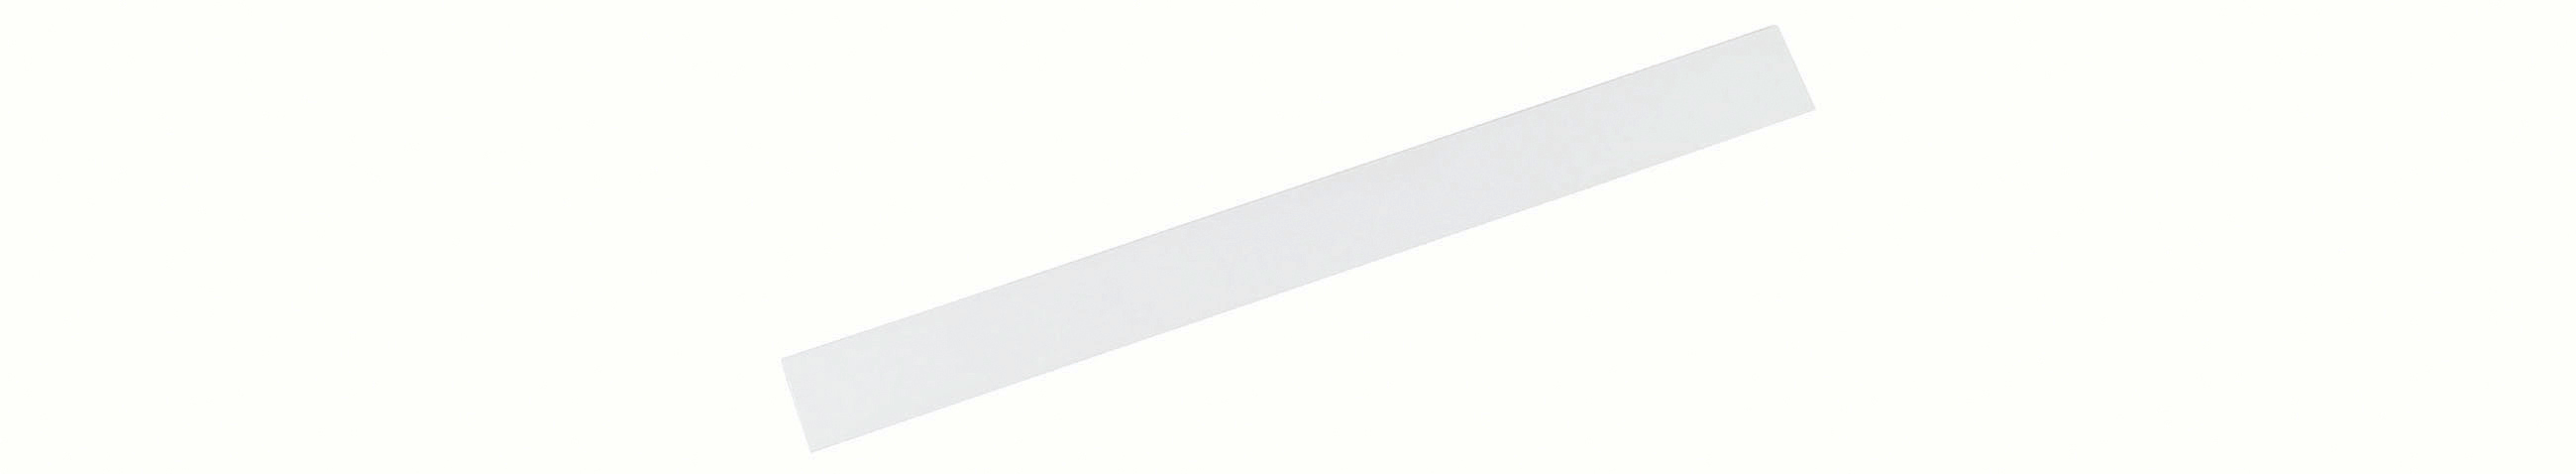 MAUL Ferro band standard 100cm 6207002 blanc